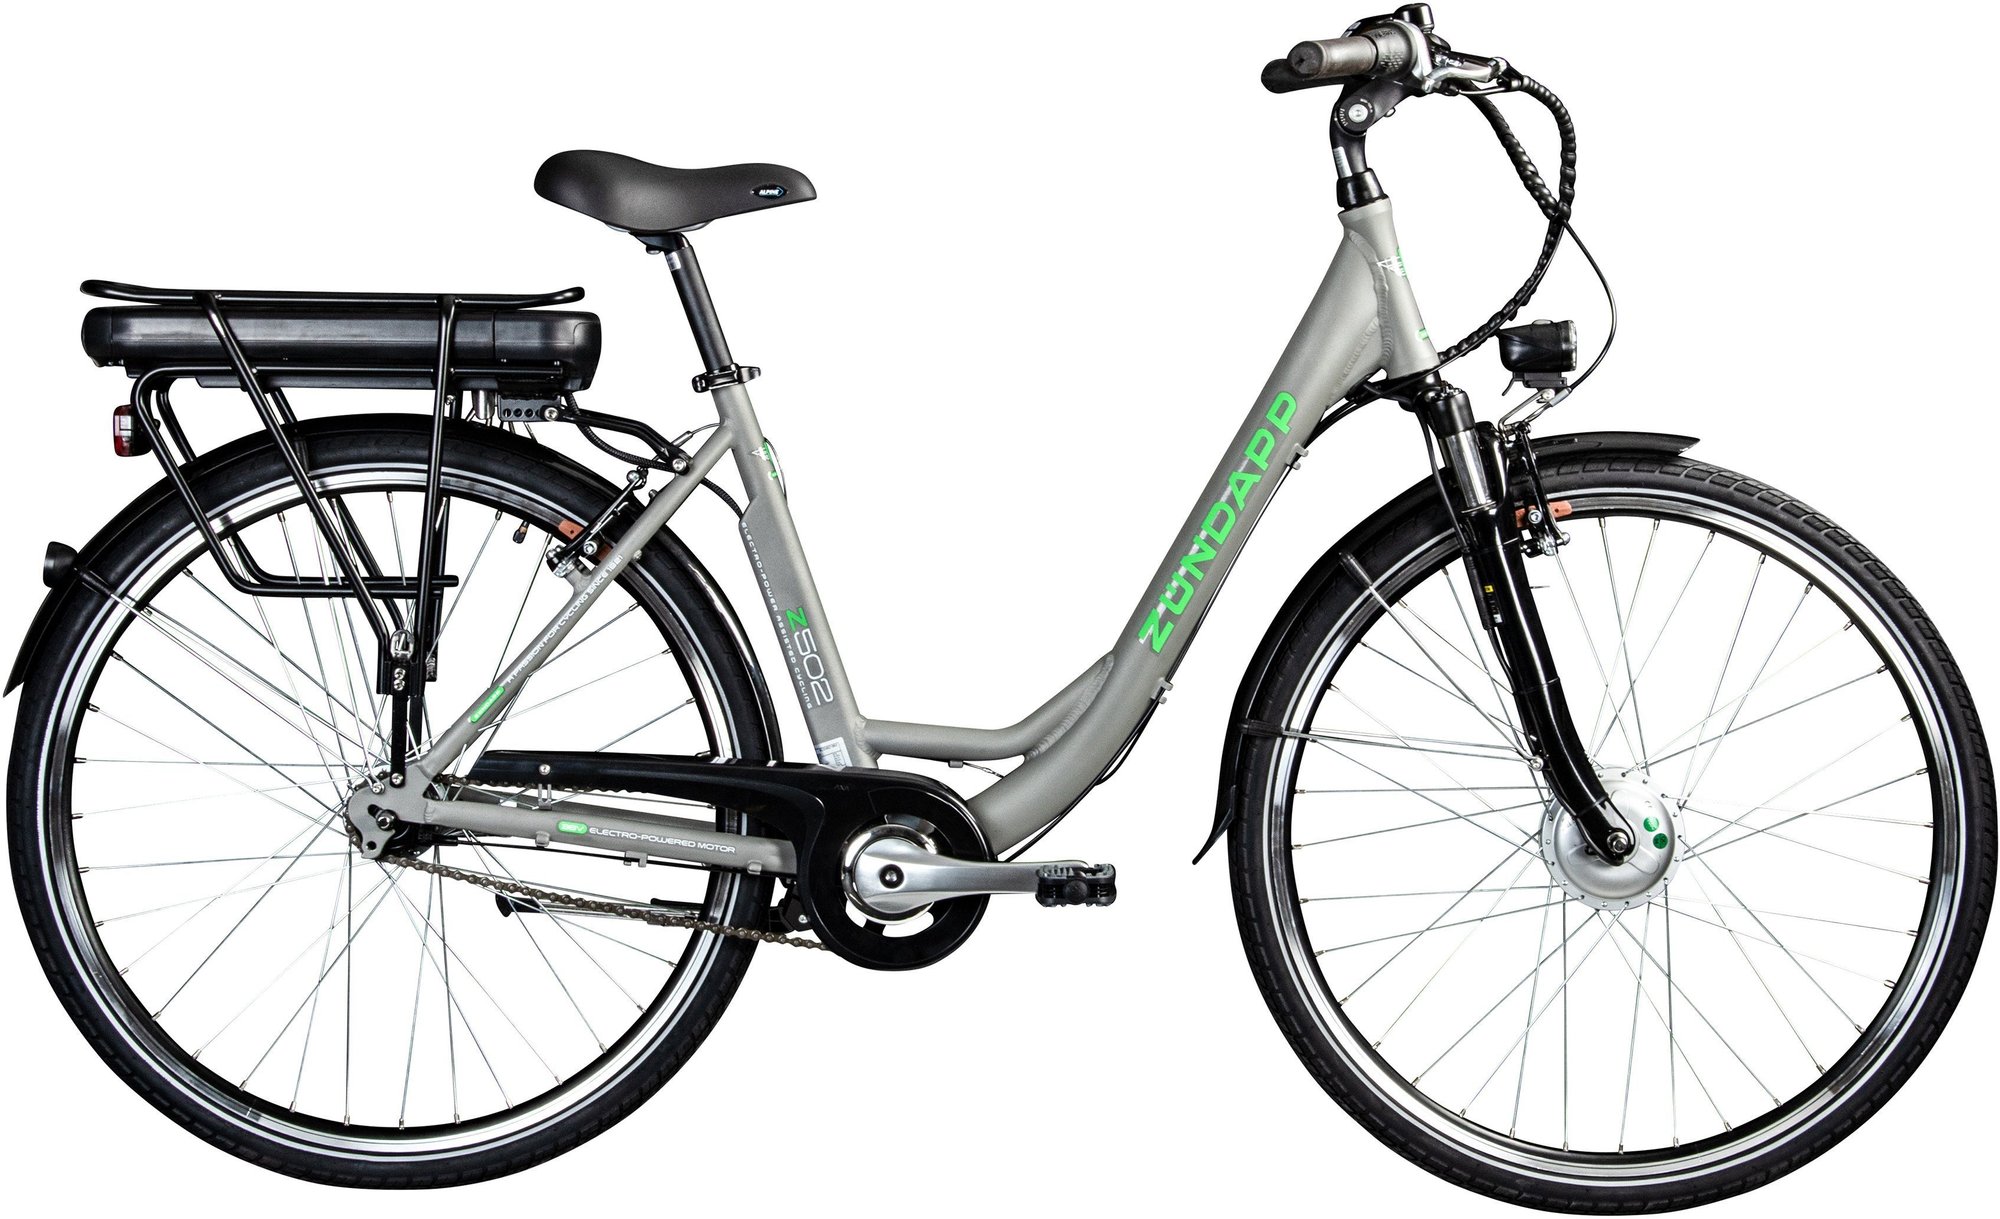 Zündapp Z502 E-Bike grau/grün - Angebote ab 939,00 €